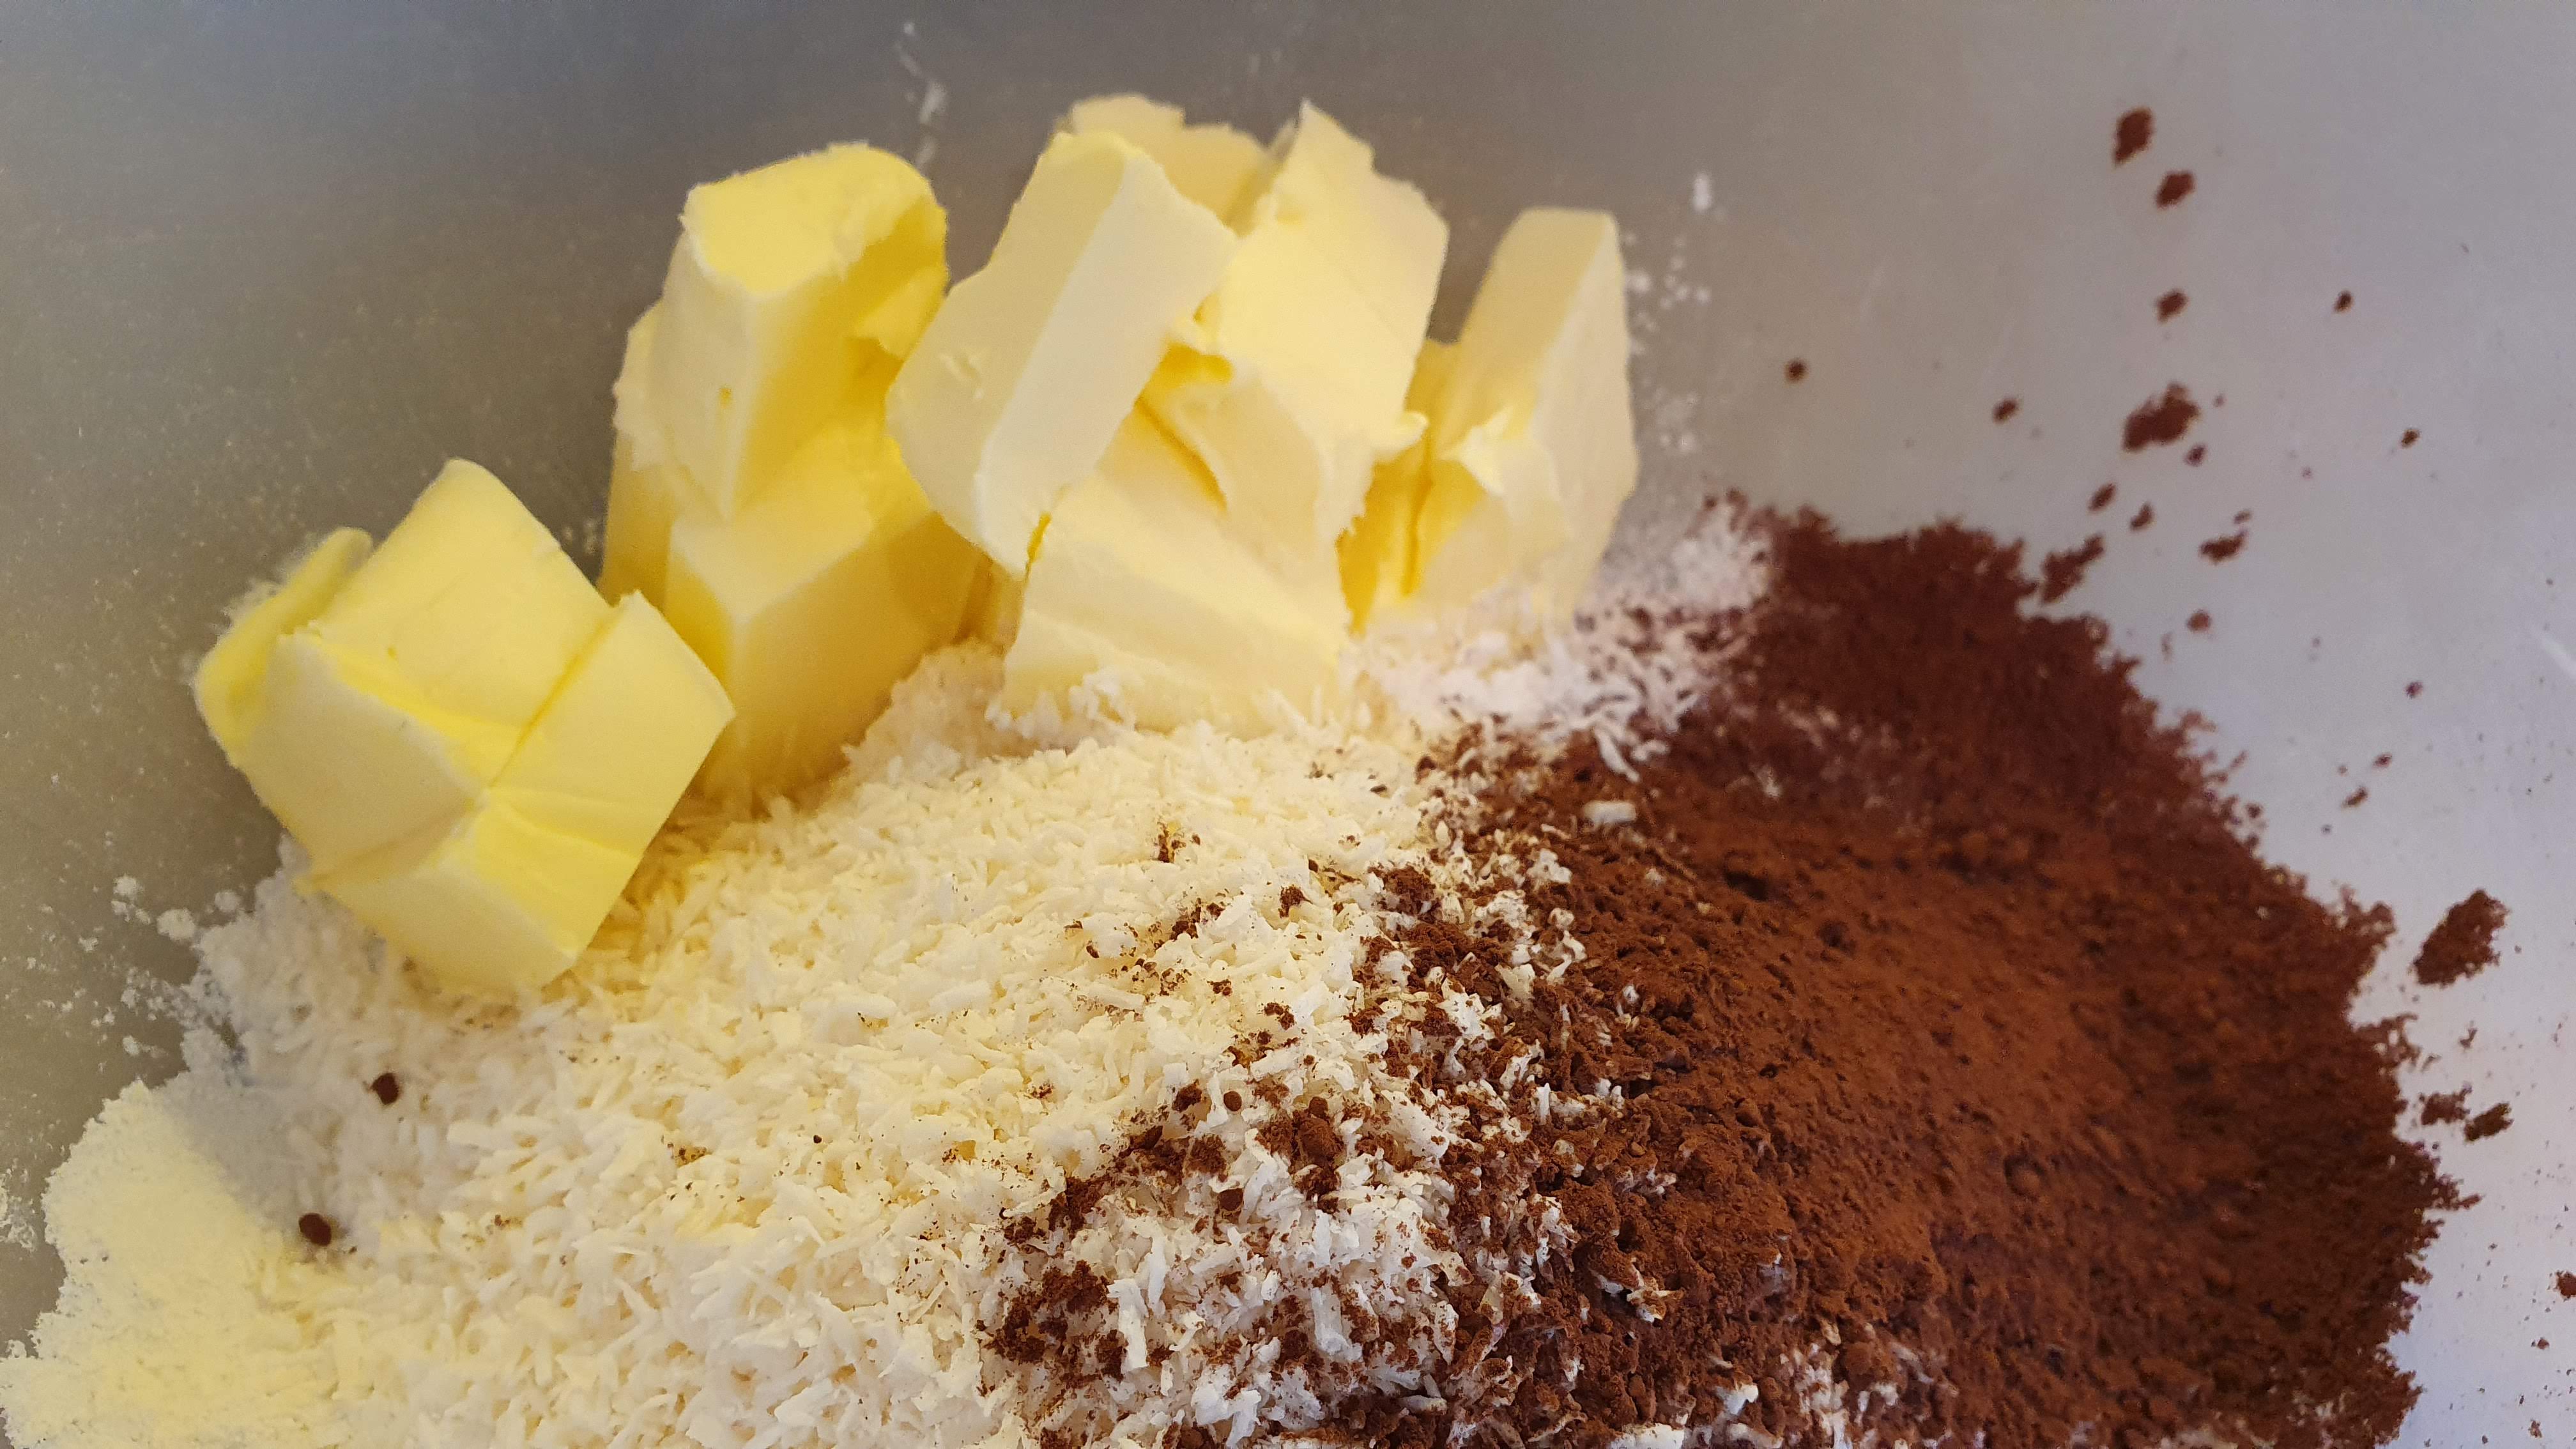 Maslo si vyberieme aspoň hodinu pred prípravou z chladničky, aby bolo mäkké. Z ingrediencií vymiešame hutnejšie cesto.